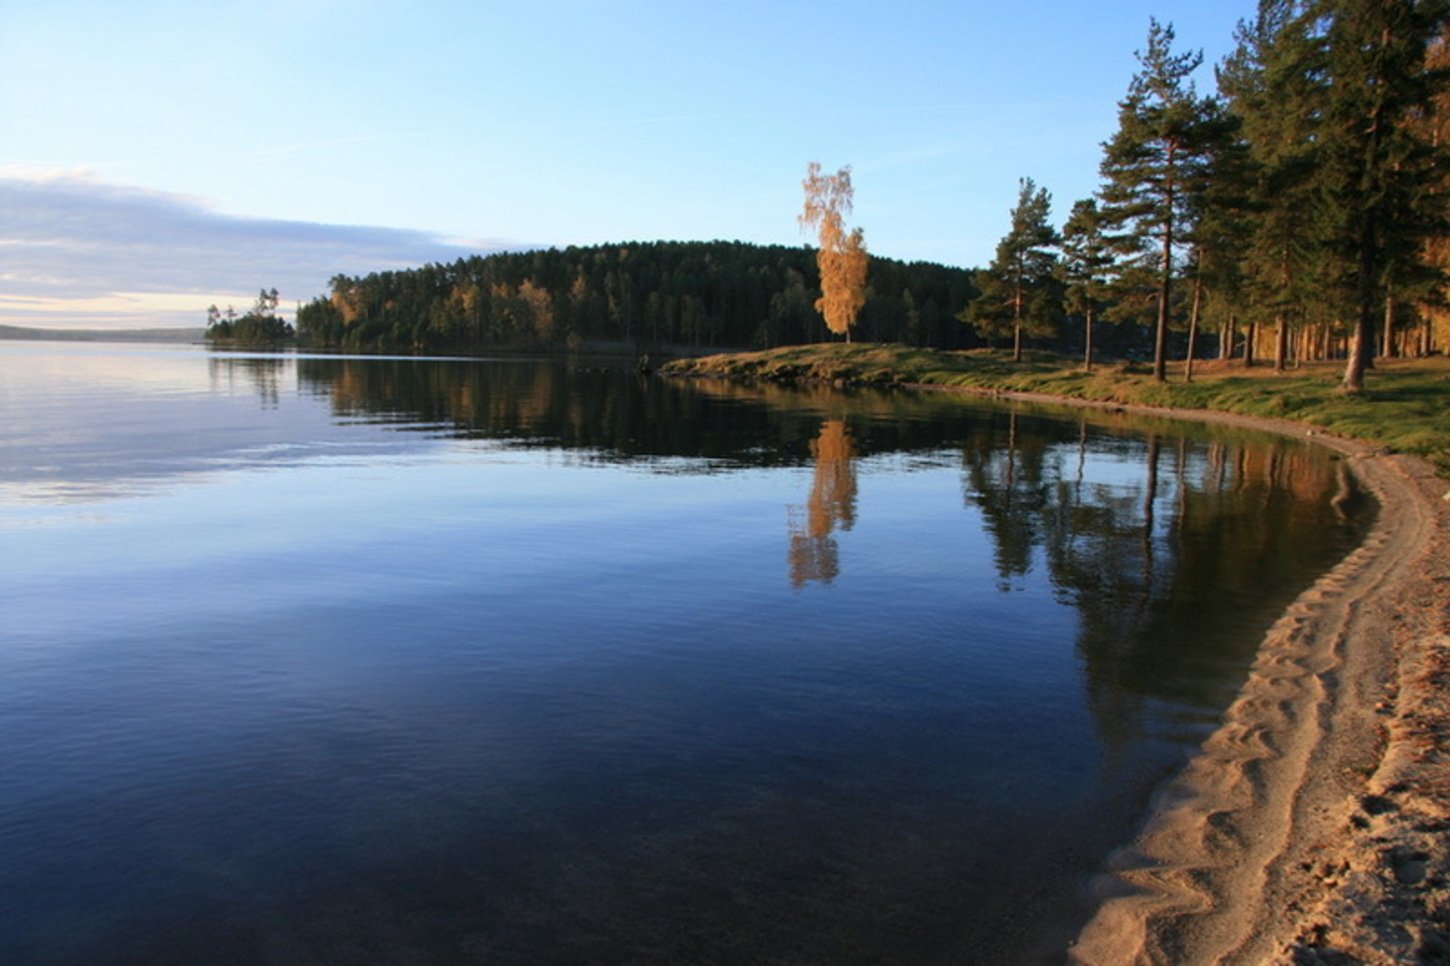 Реки и озера свердловской